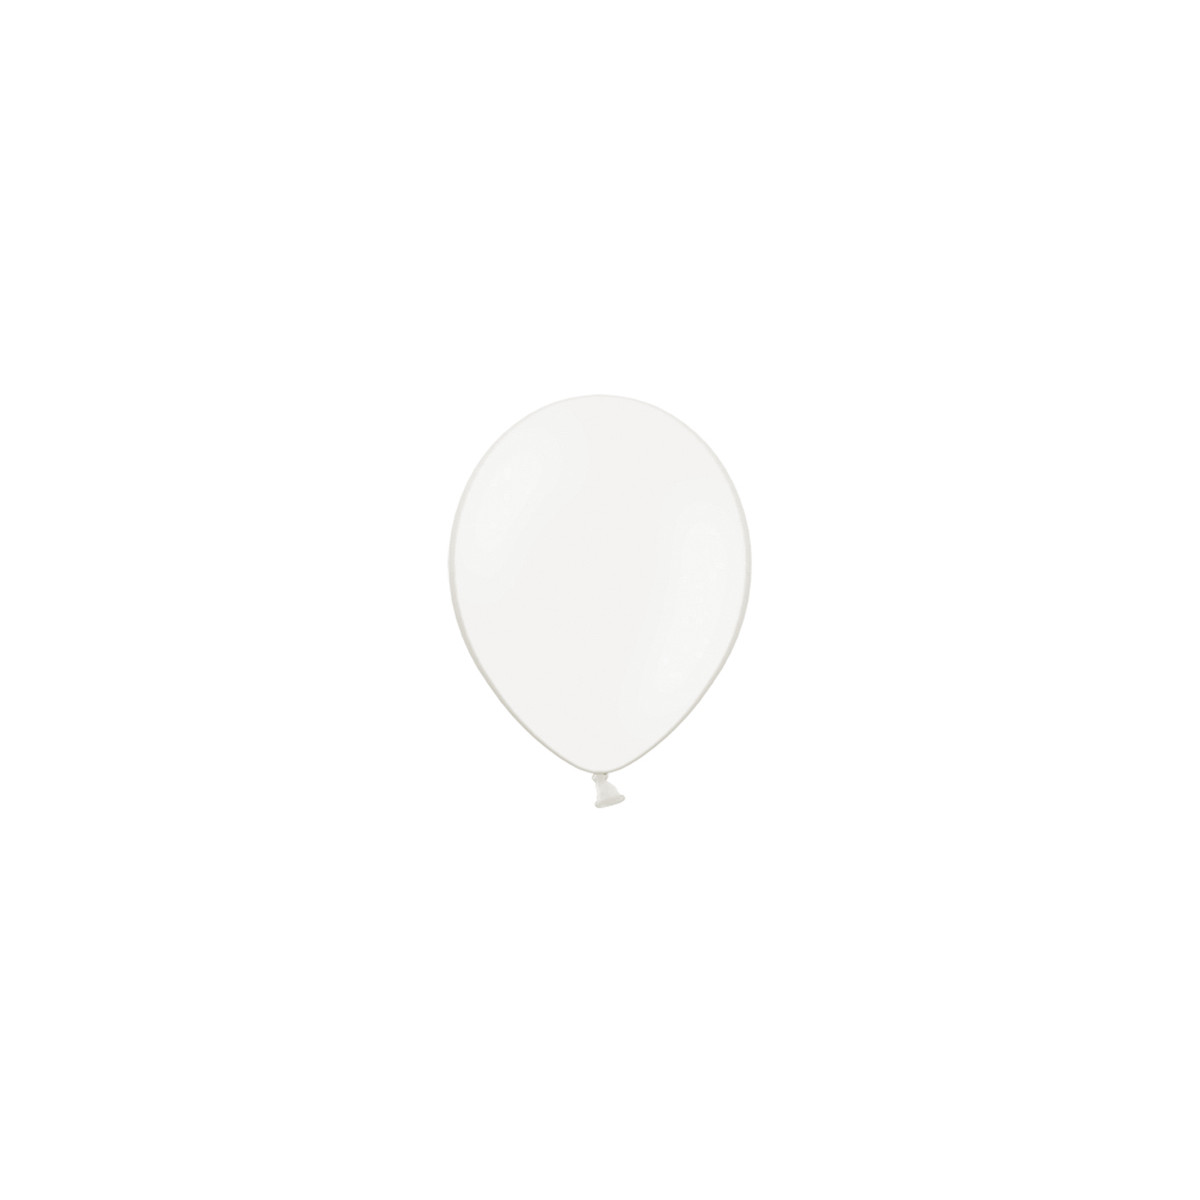 x100 Ballons crystal blanc